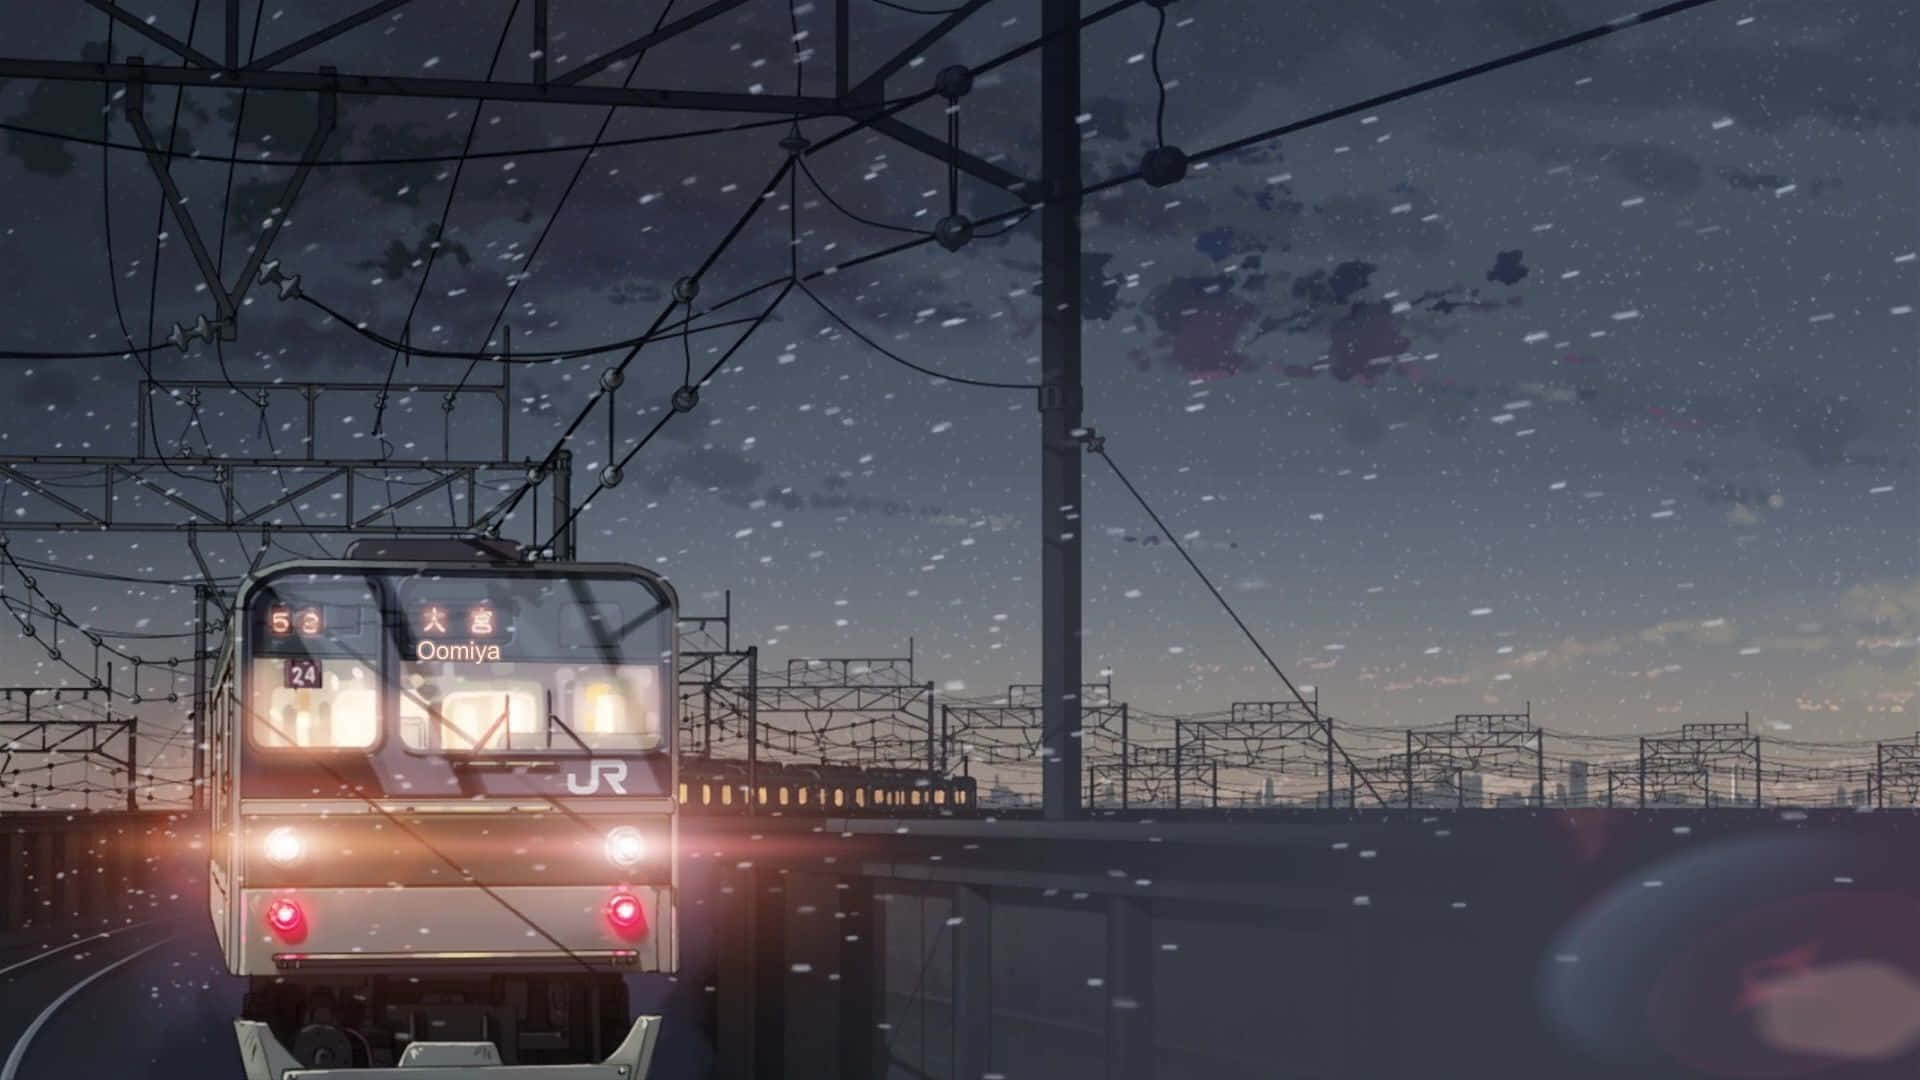 Makoto Shinkai Background Wallpaper